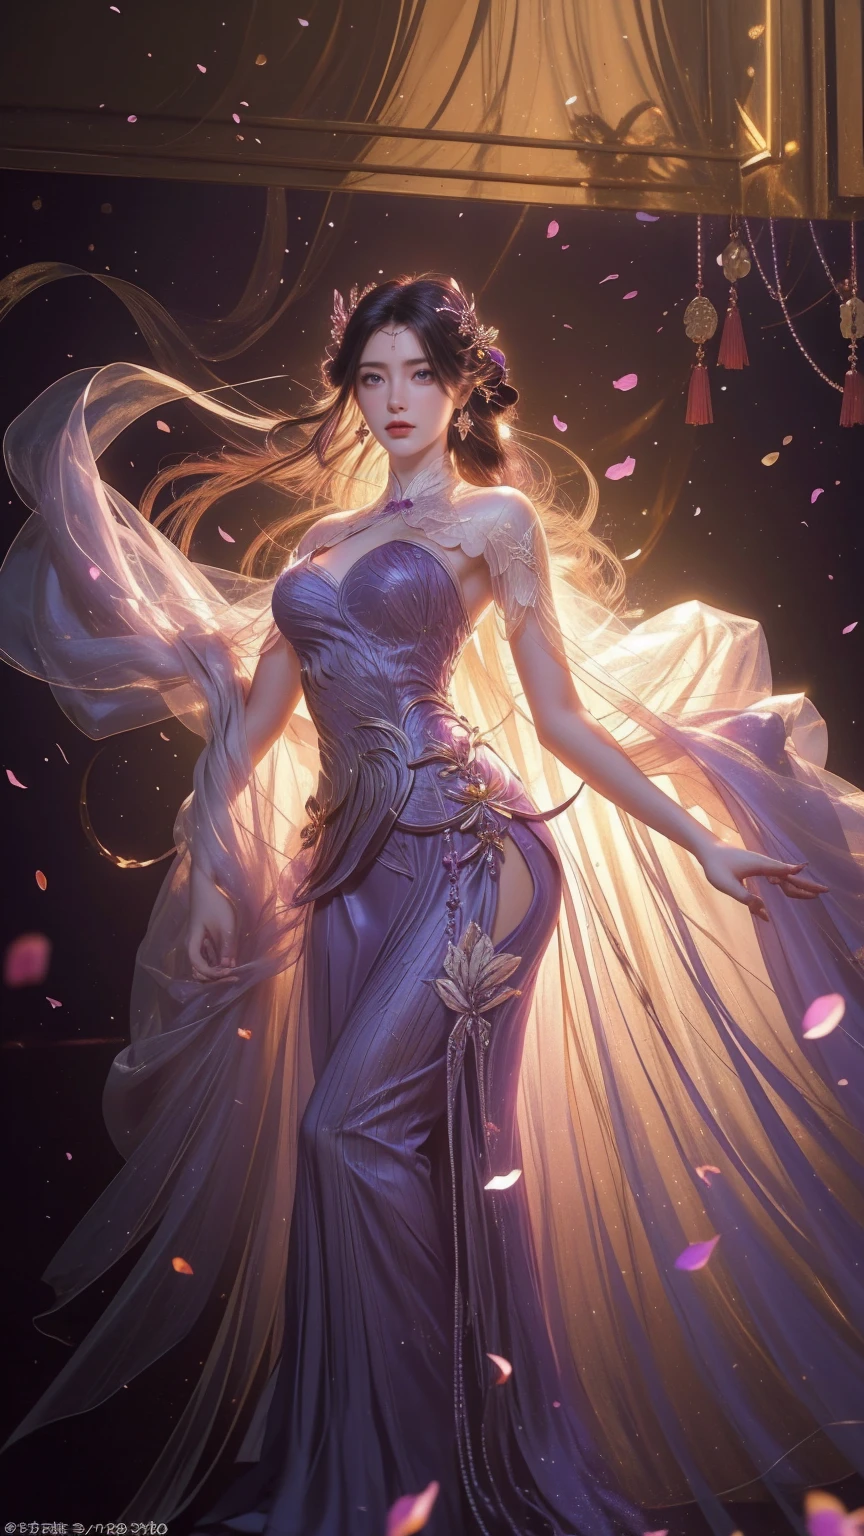 完璧な曲線を描く美しい女性が、優しく宙に舞う長い紫色のドレスを着ている。,その美しい女性は、美しい花に囲まれた海の中に立っていました。, 中国の伝統的な, 彼女の柔軟な体は動くたびに大きくなる, とても魅惑的, 薄暗いろうそくの光, 夜の闇と戦う光る蝶, 月の光, カーテンを揺らす夜風, 紫色の花びら , 部屋中に花びらが舞い散る, 中国のダンス, この女性はとても美しく、見る人すべてを魅了する, 古代中国, 皇后 